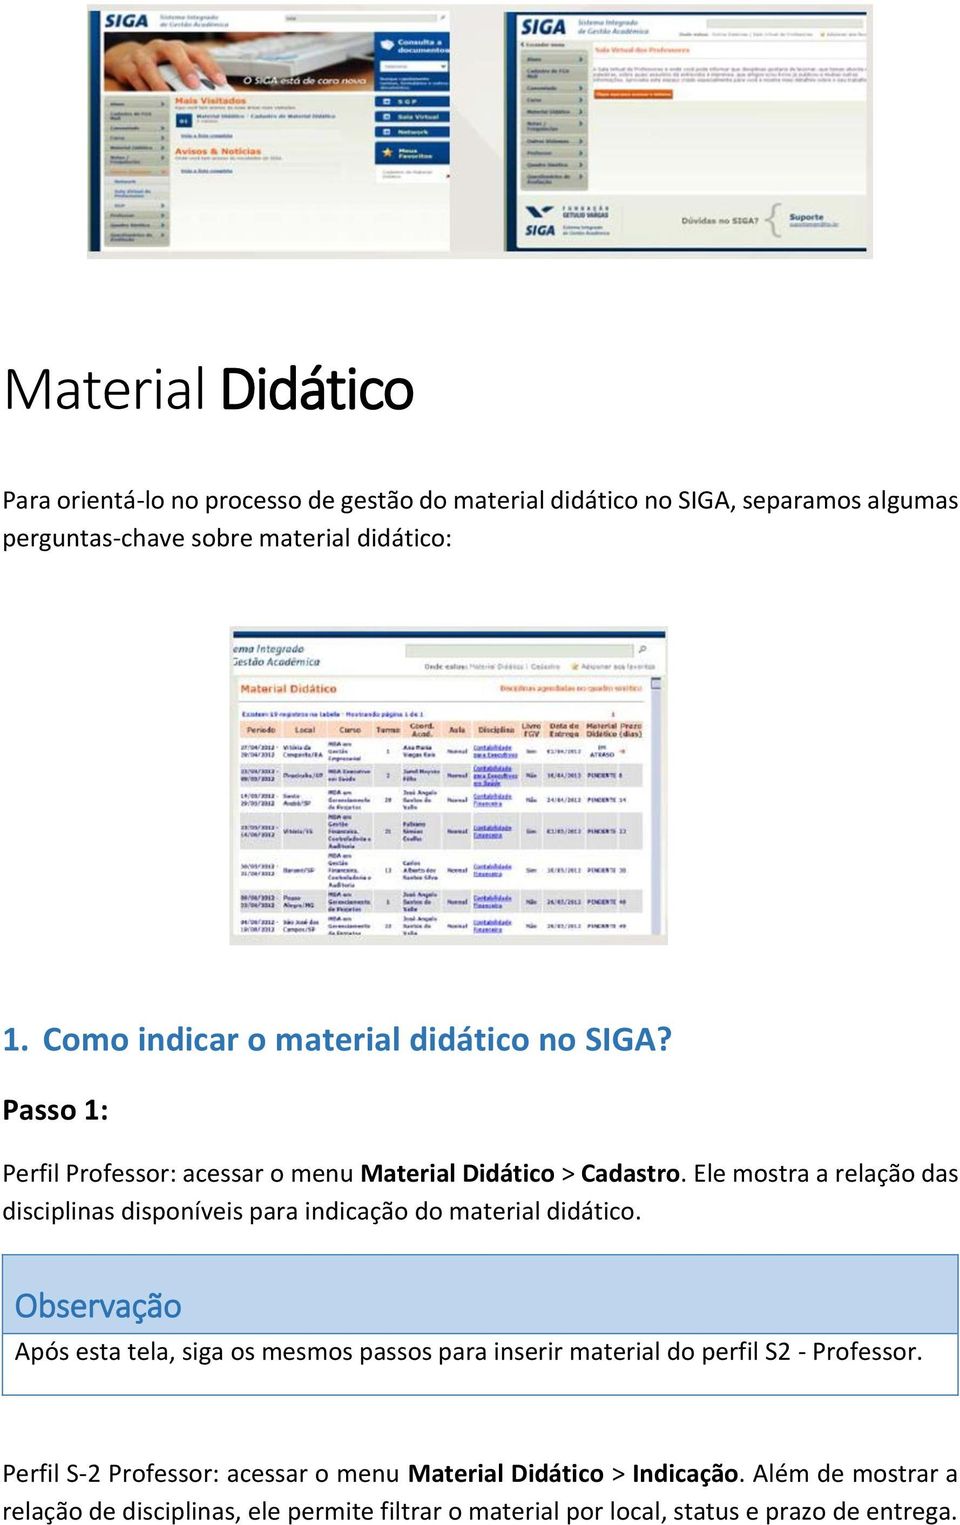 Ele mostra a relação das disciplinas disponíveis para indicação do material didático.